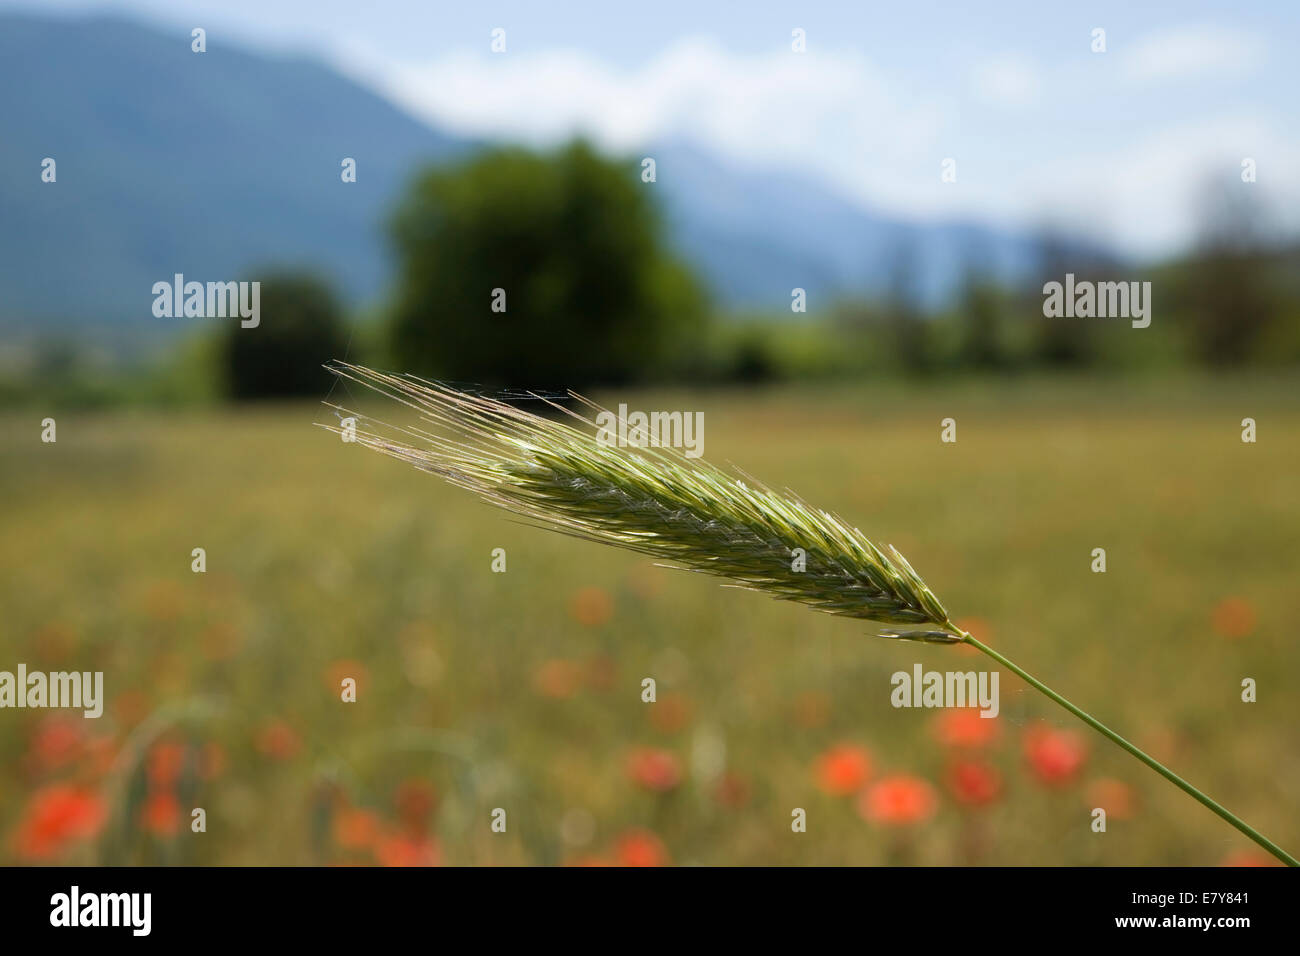 einzelne Spreu von Weizen wächst in einem Feld in einer warmen und sonnigen Landschaft Stockfoto